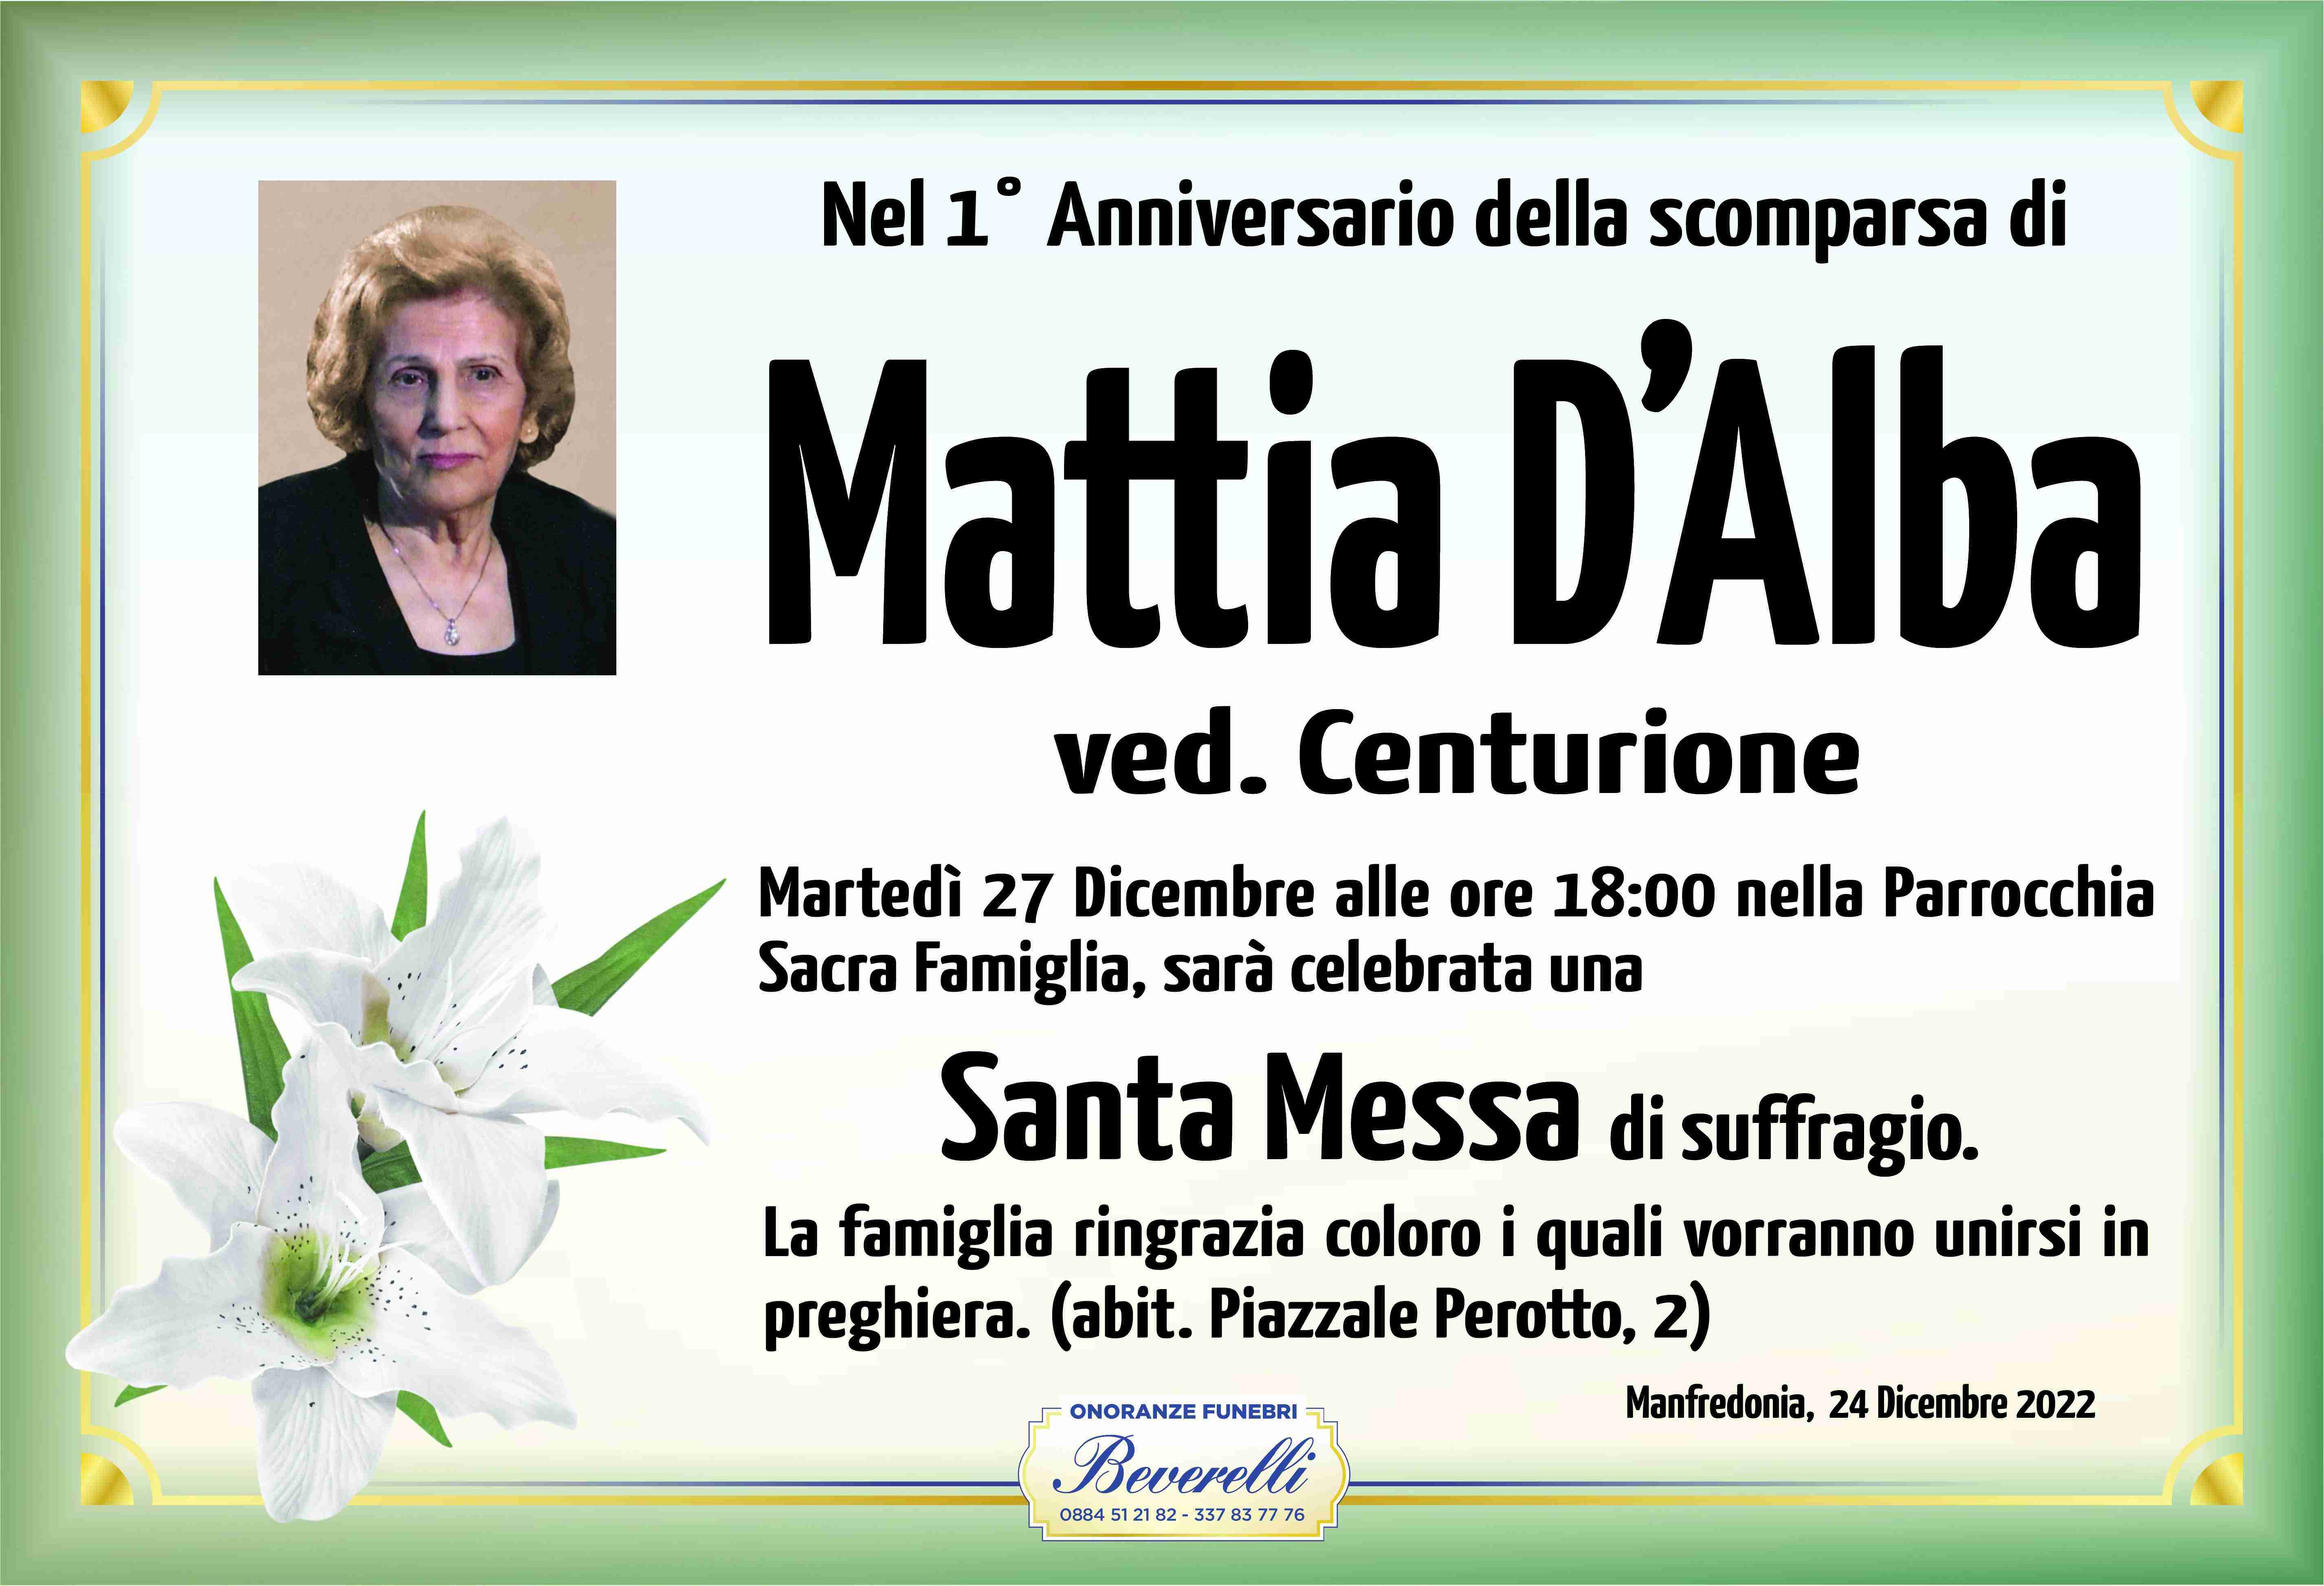 Mattia D'Alba